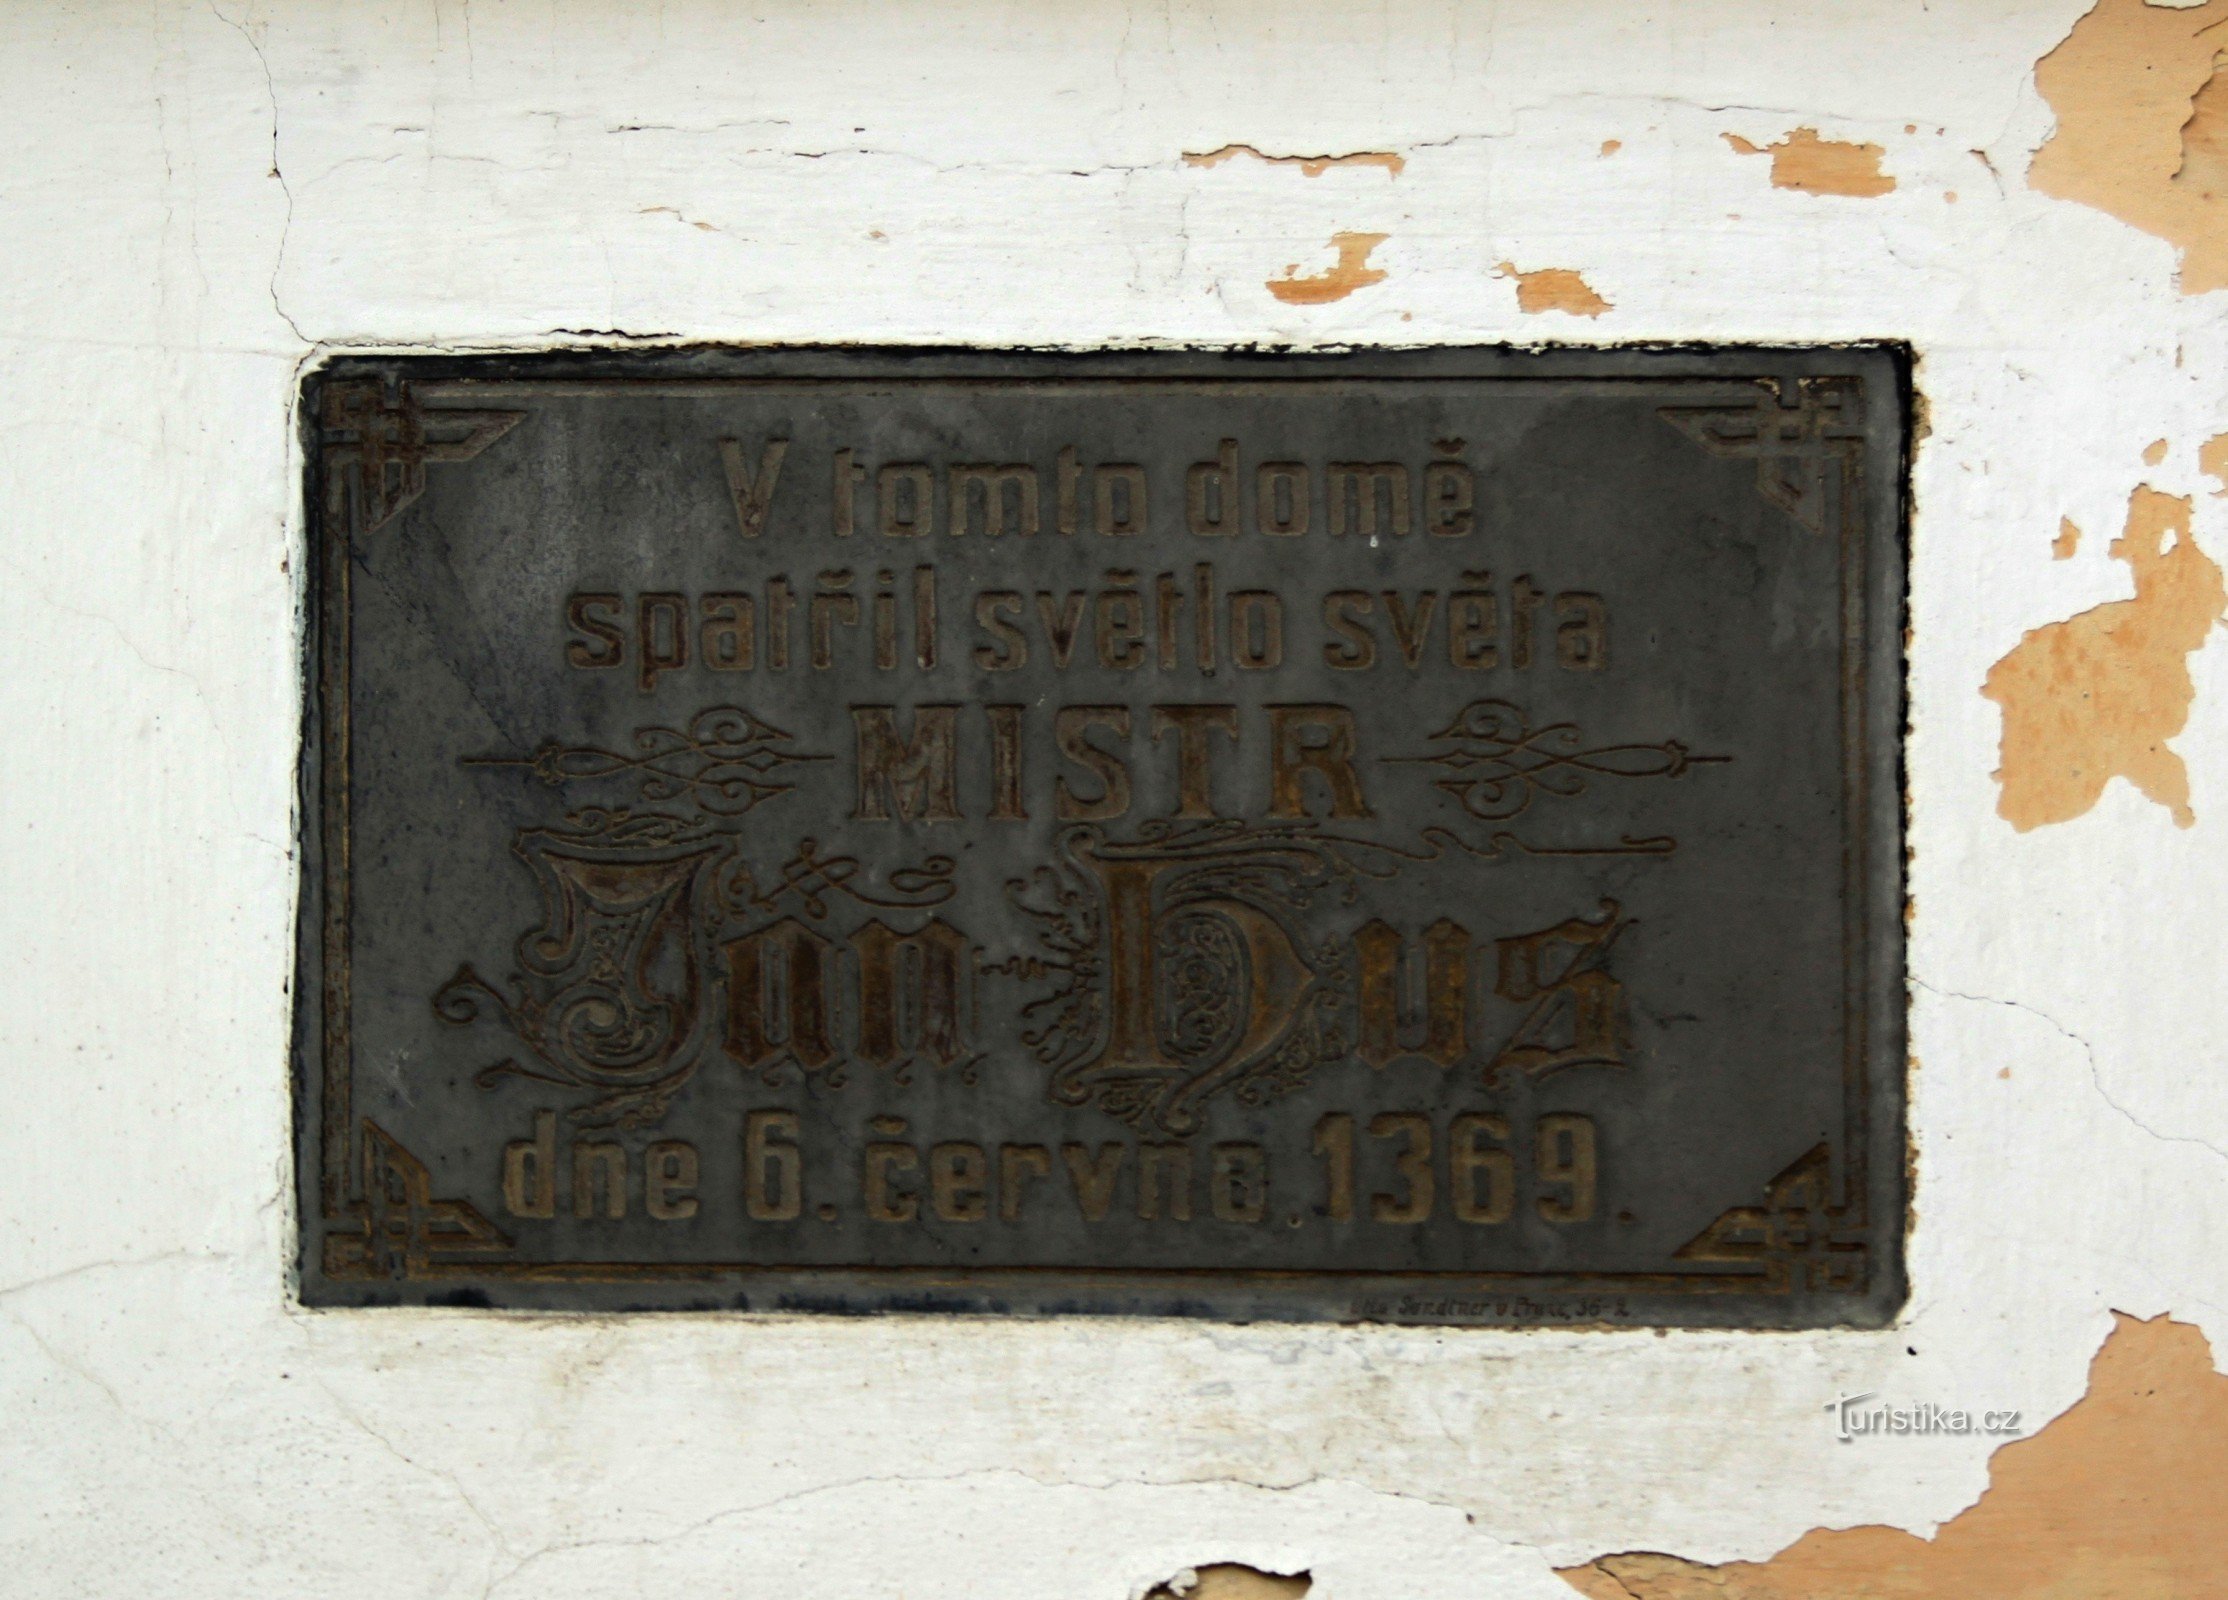 Denkmal für Meister Jan Hus